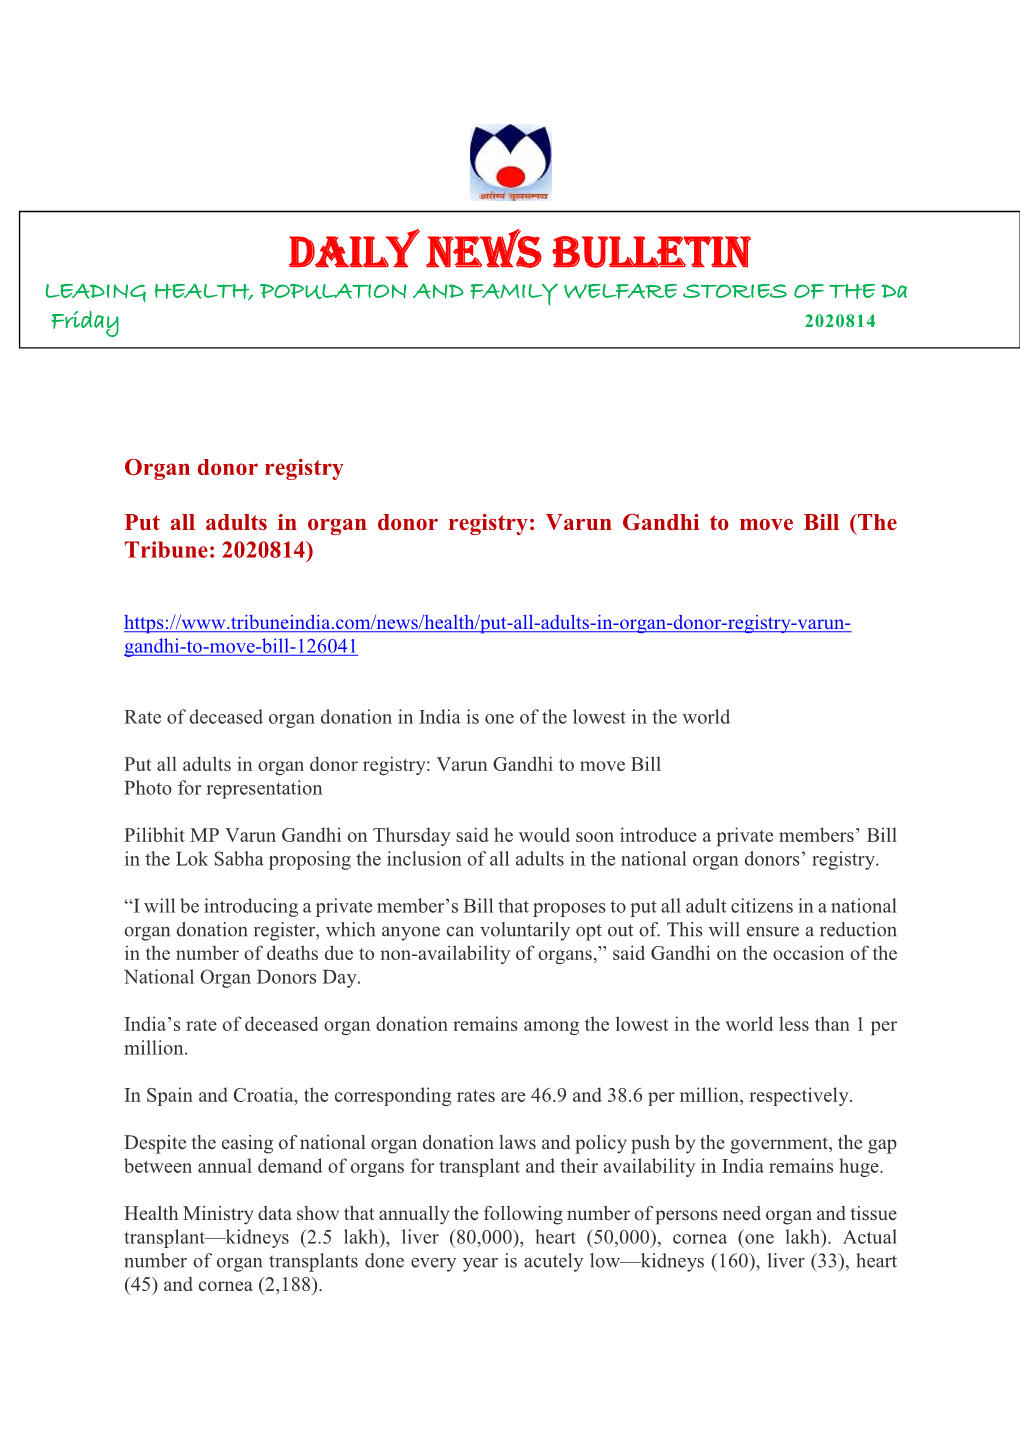 Daily Health News Bulletin (14-08-2020)